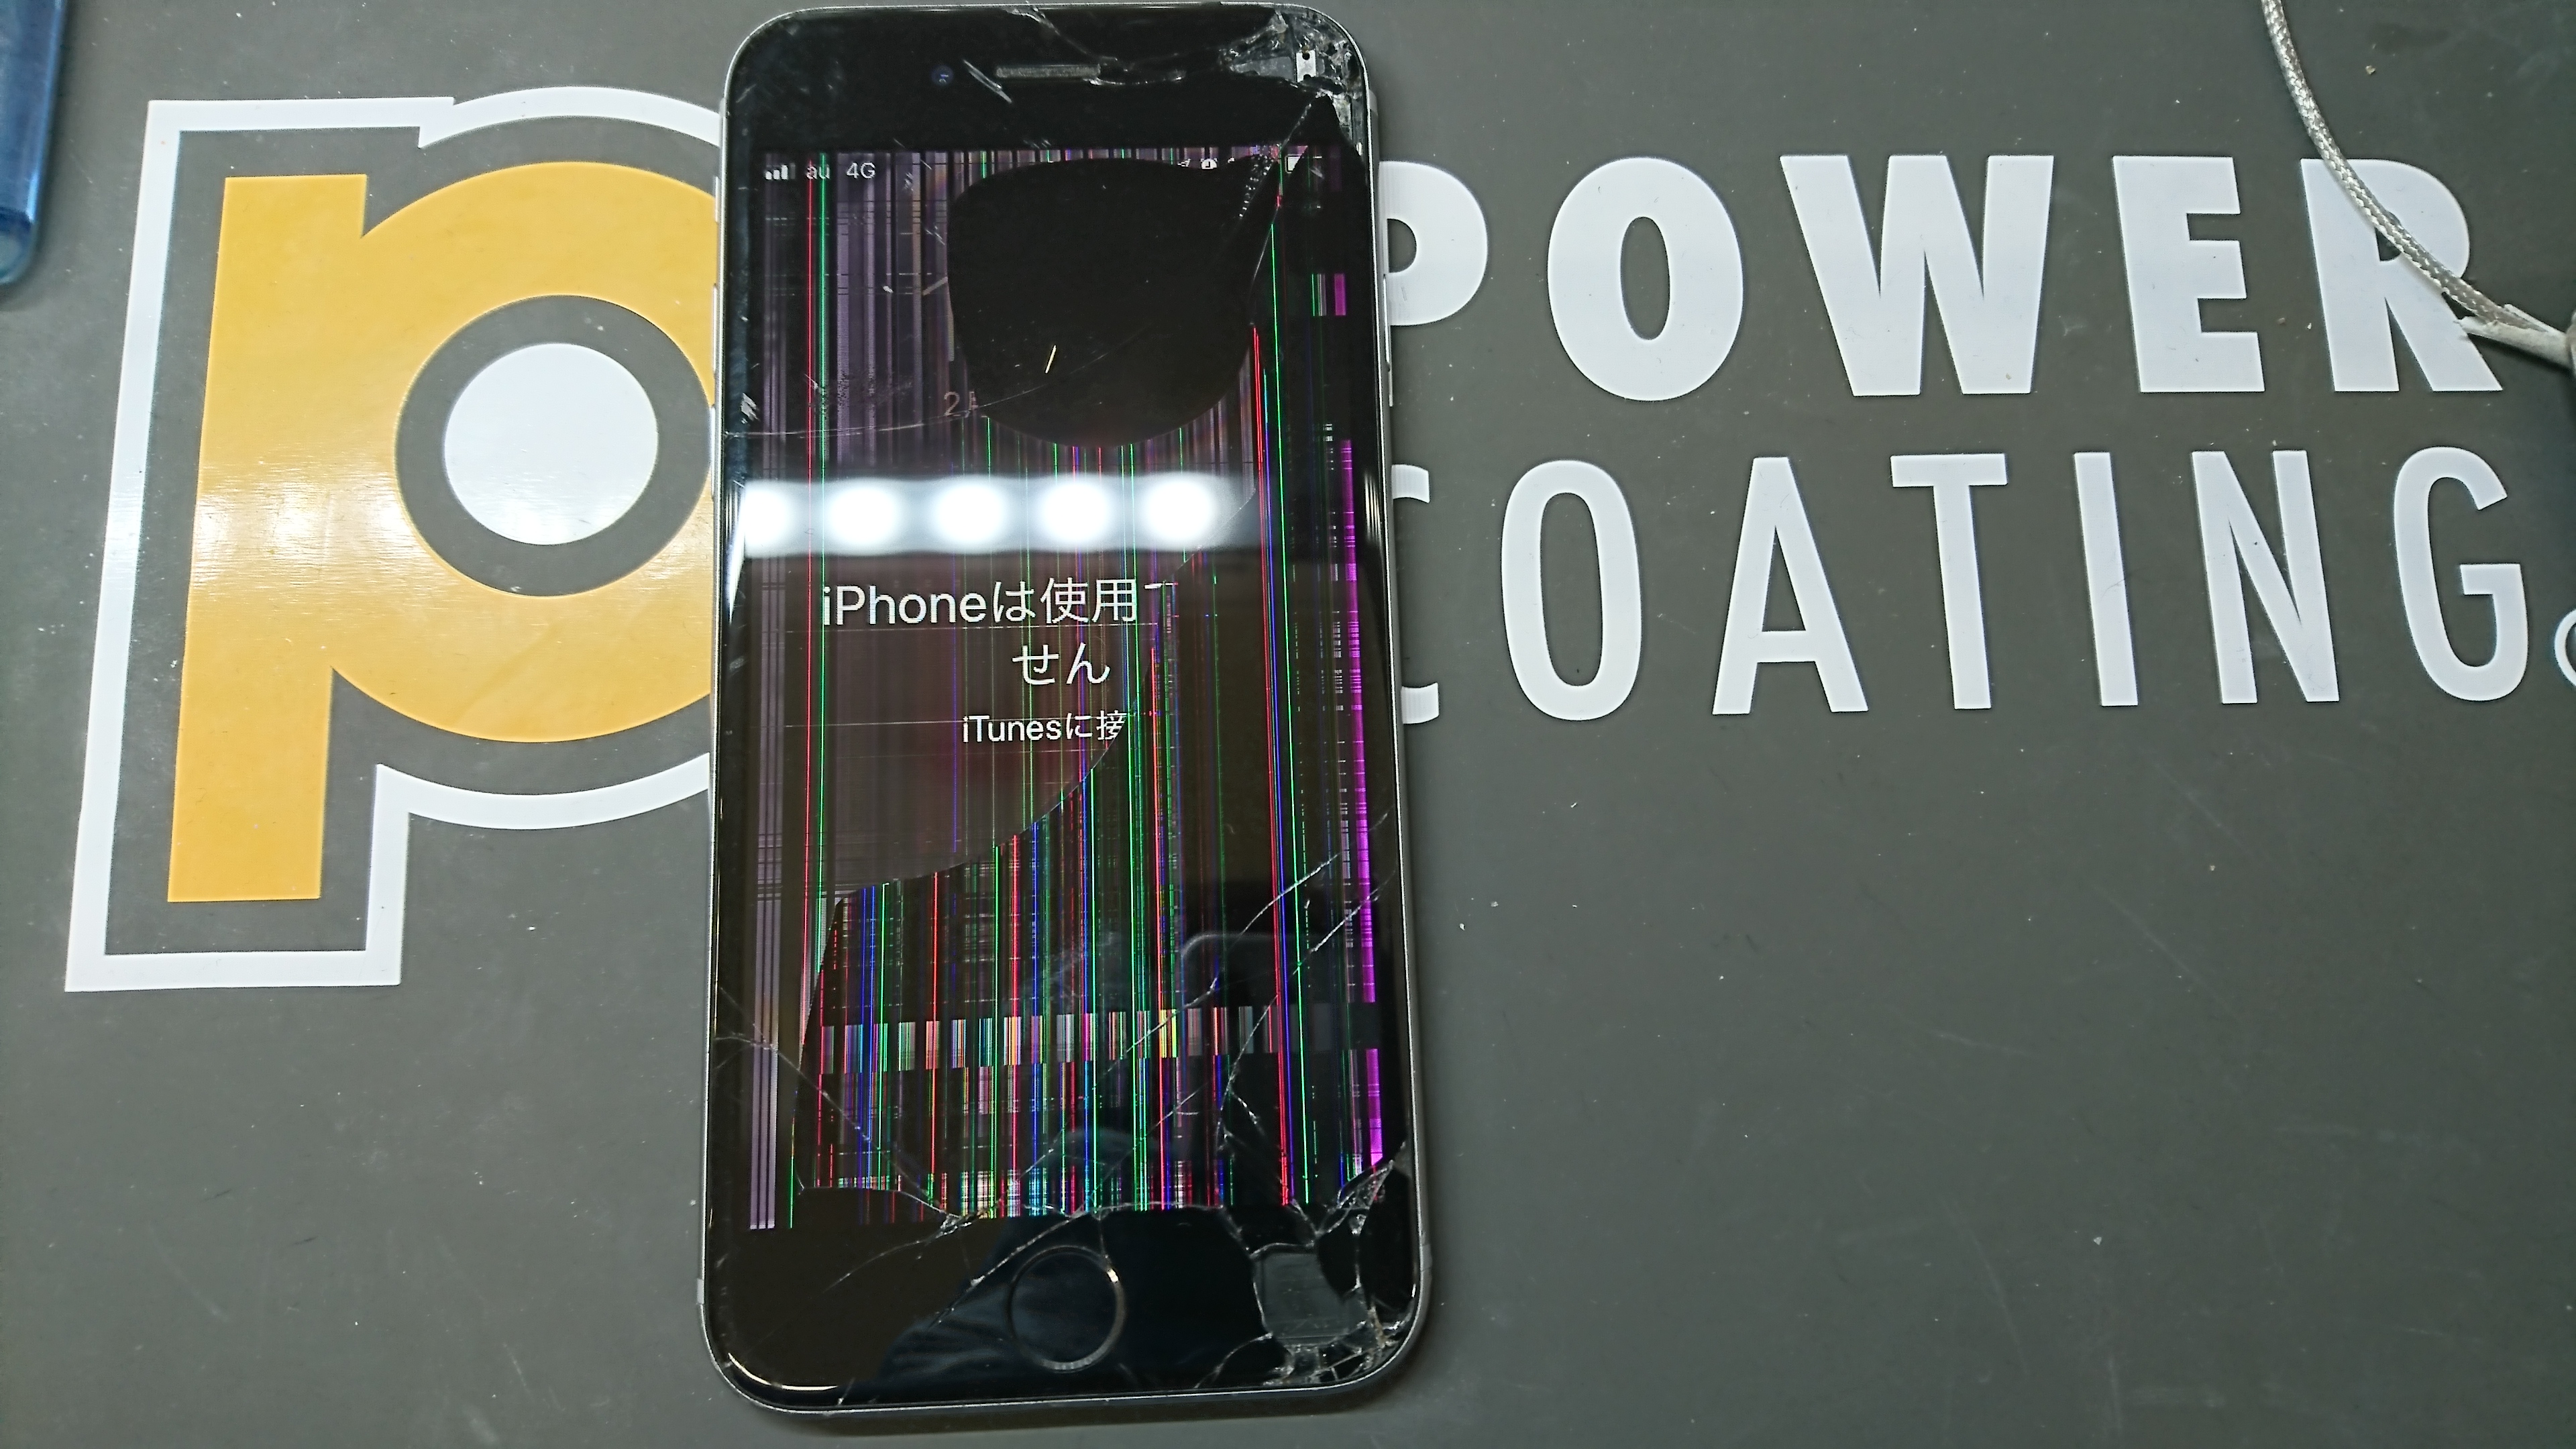 Iphone 6sの液晶が壊れてしまった 札幌でiphone修理 故障は安心の道内企業アイフォンクリア 信用 信頼 高技術の 期待に応える誠実な Iphone修理店